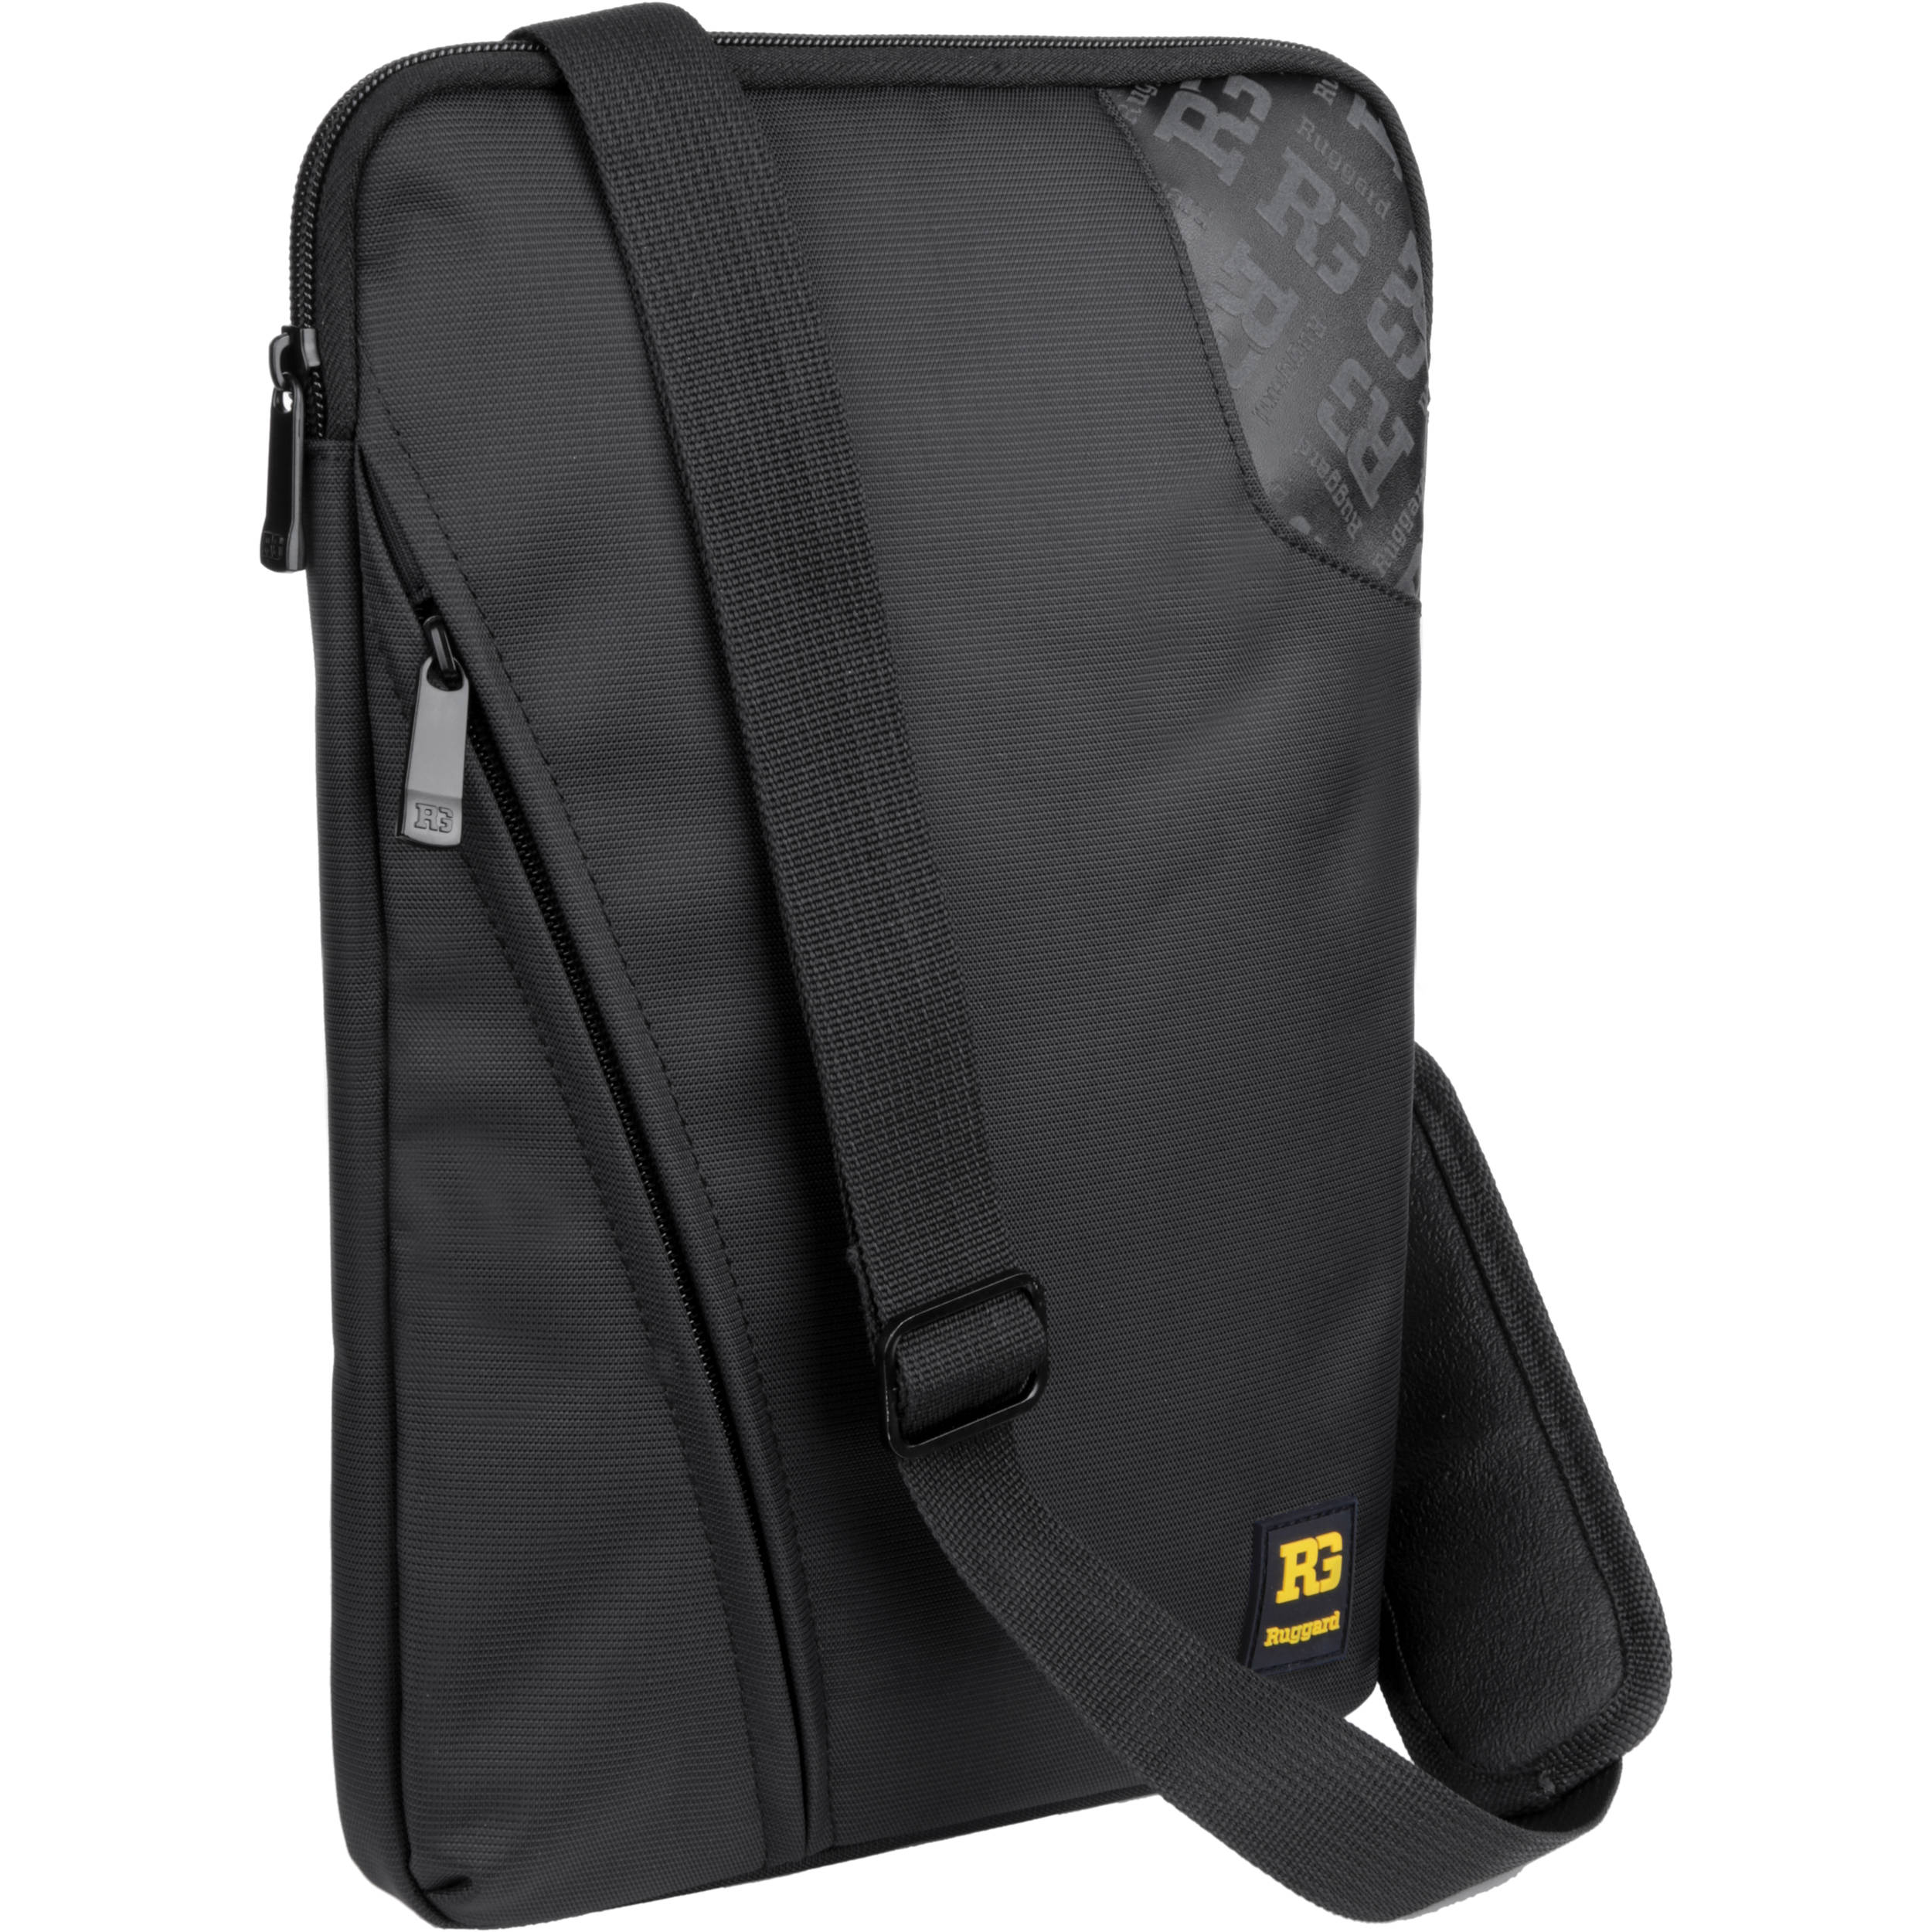 sling laptop backpack